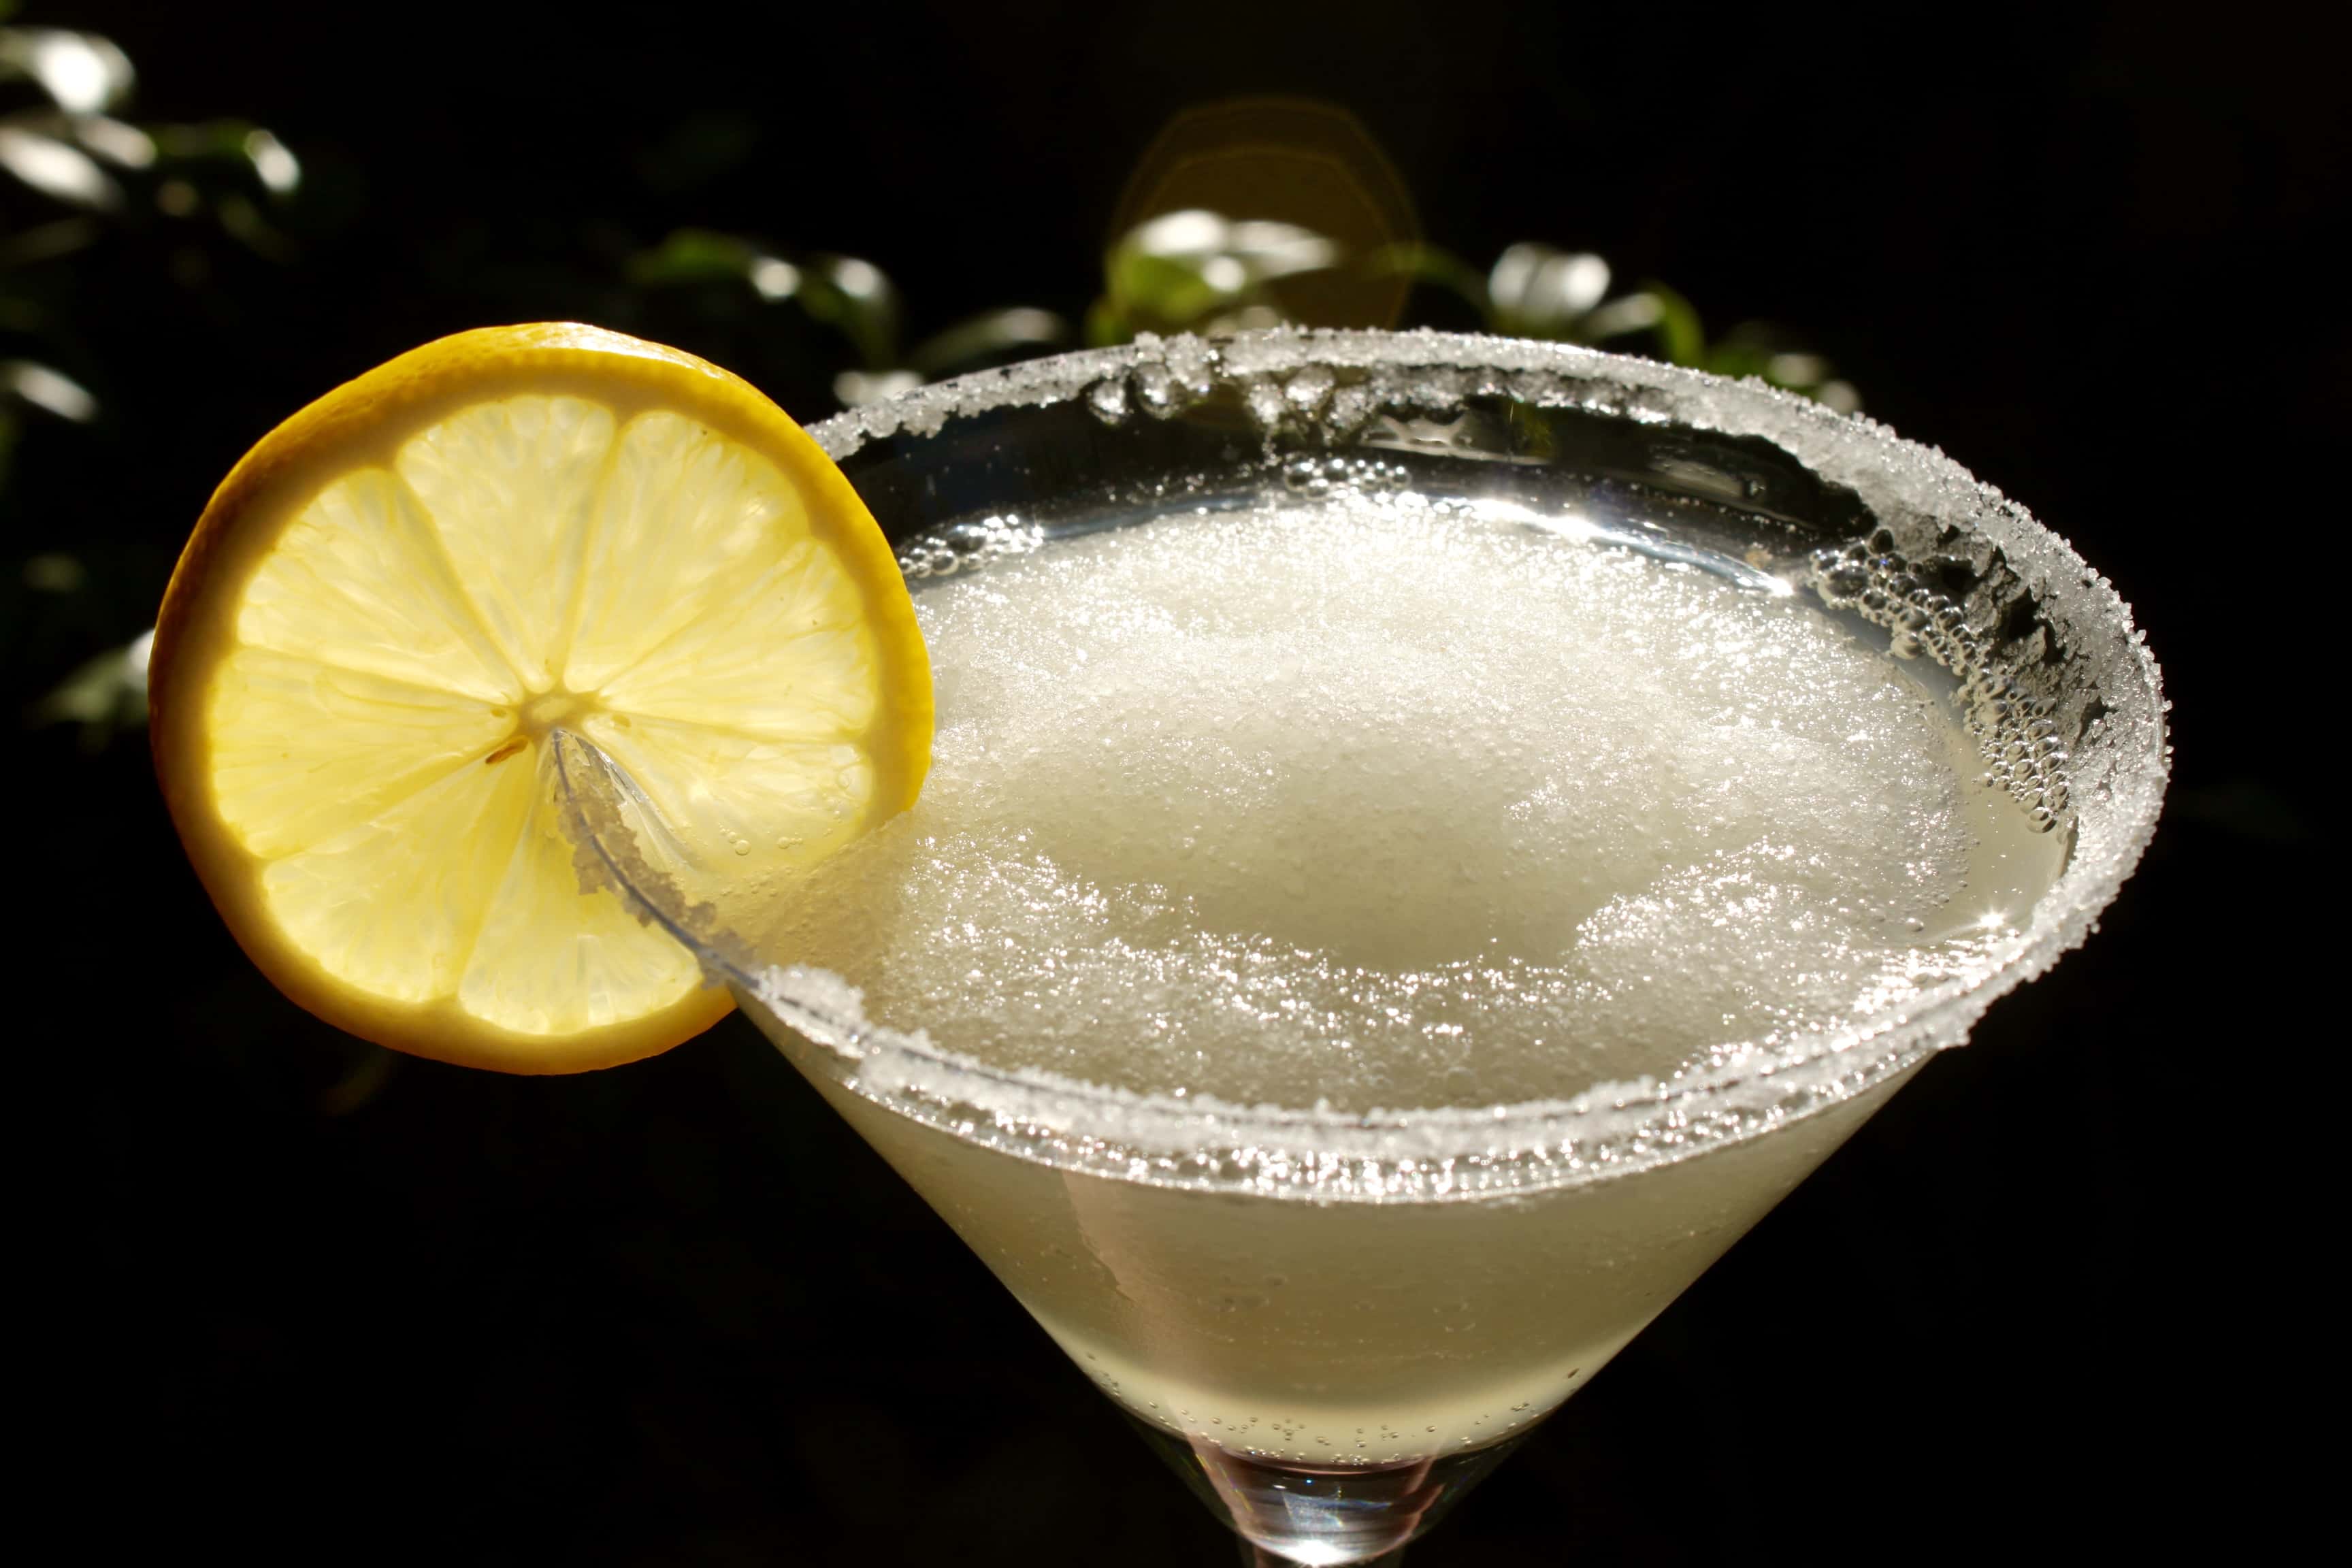 The Best Lemon Drop Martini Slush EVER!